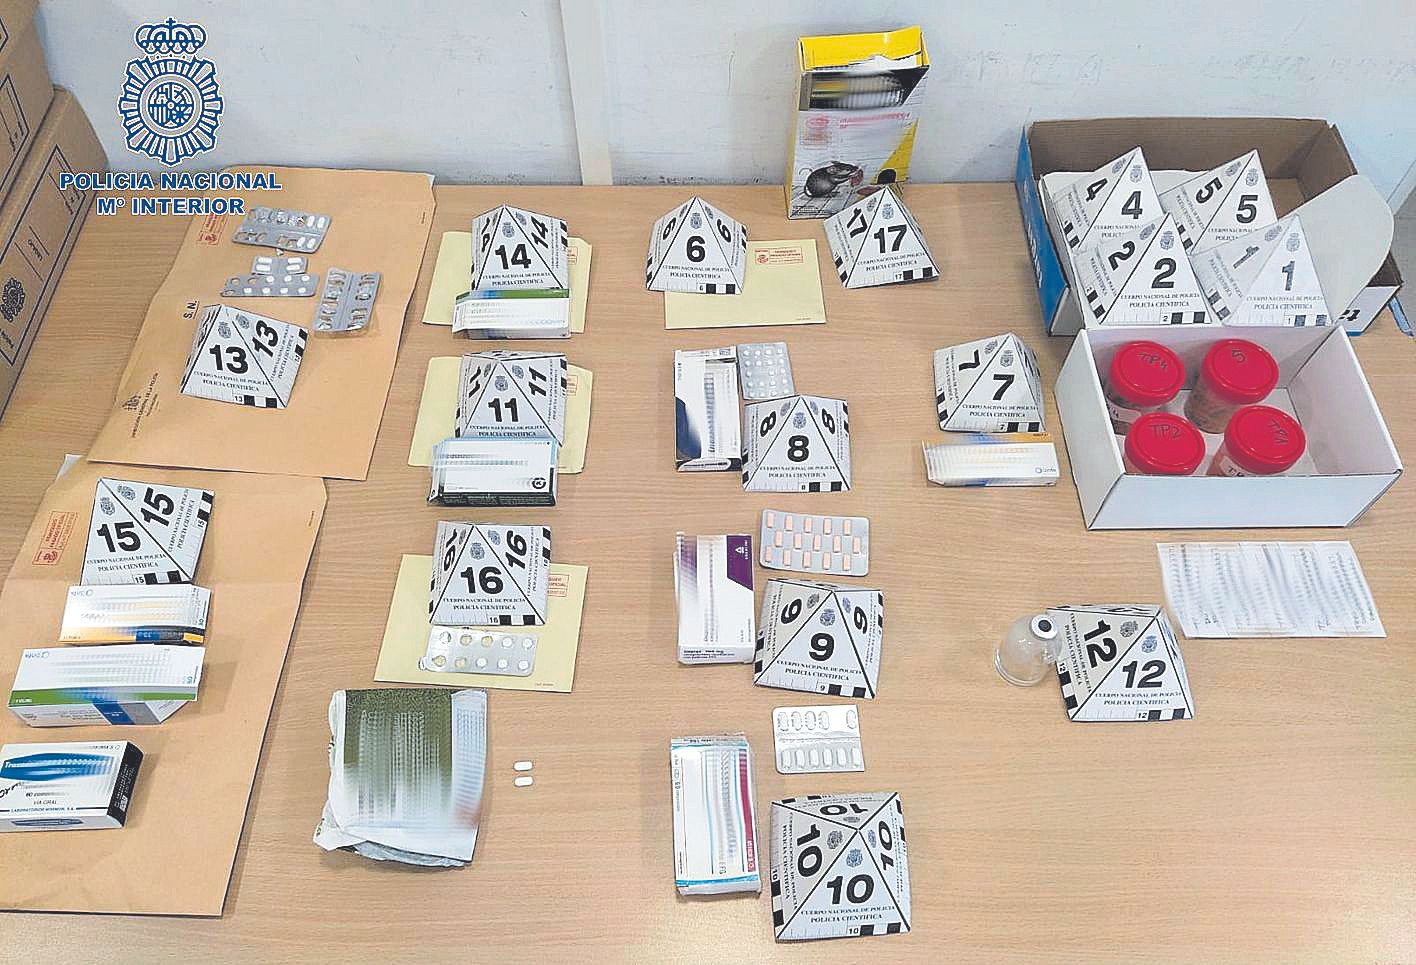 Cajas con medicamentos y raticida intervenidos por la Policía en el domicilio de la detenida.